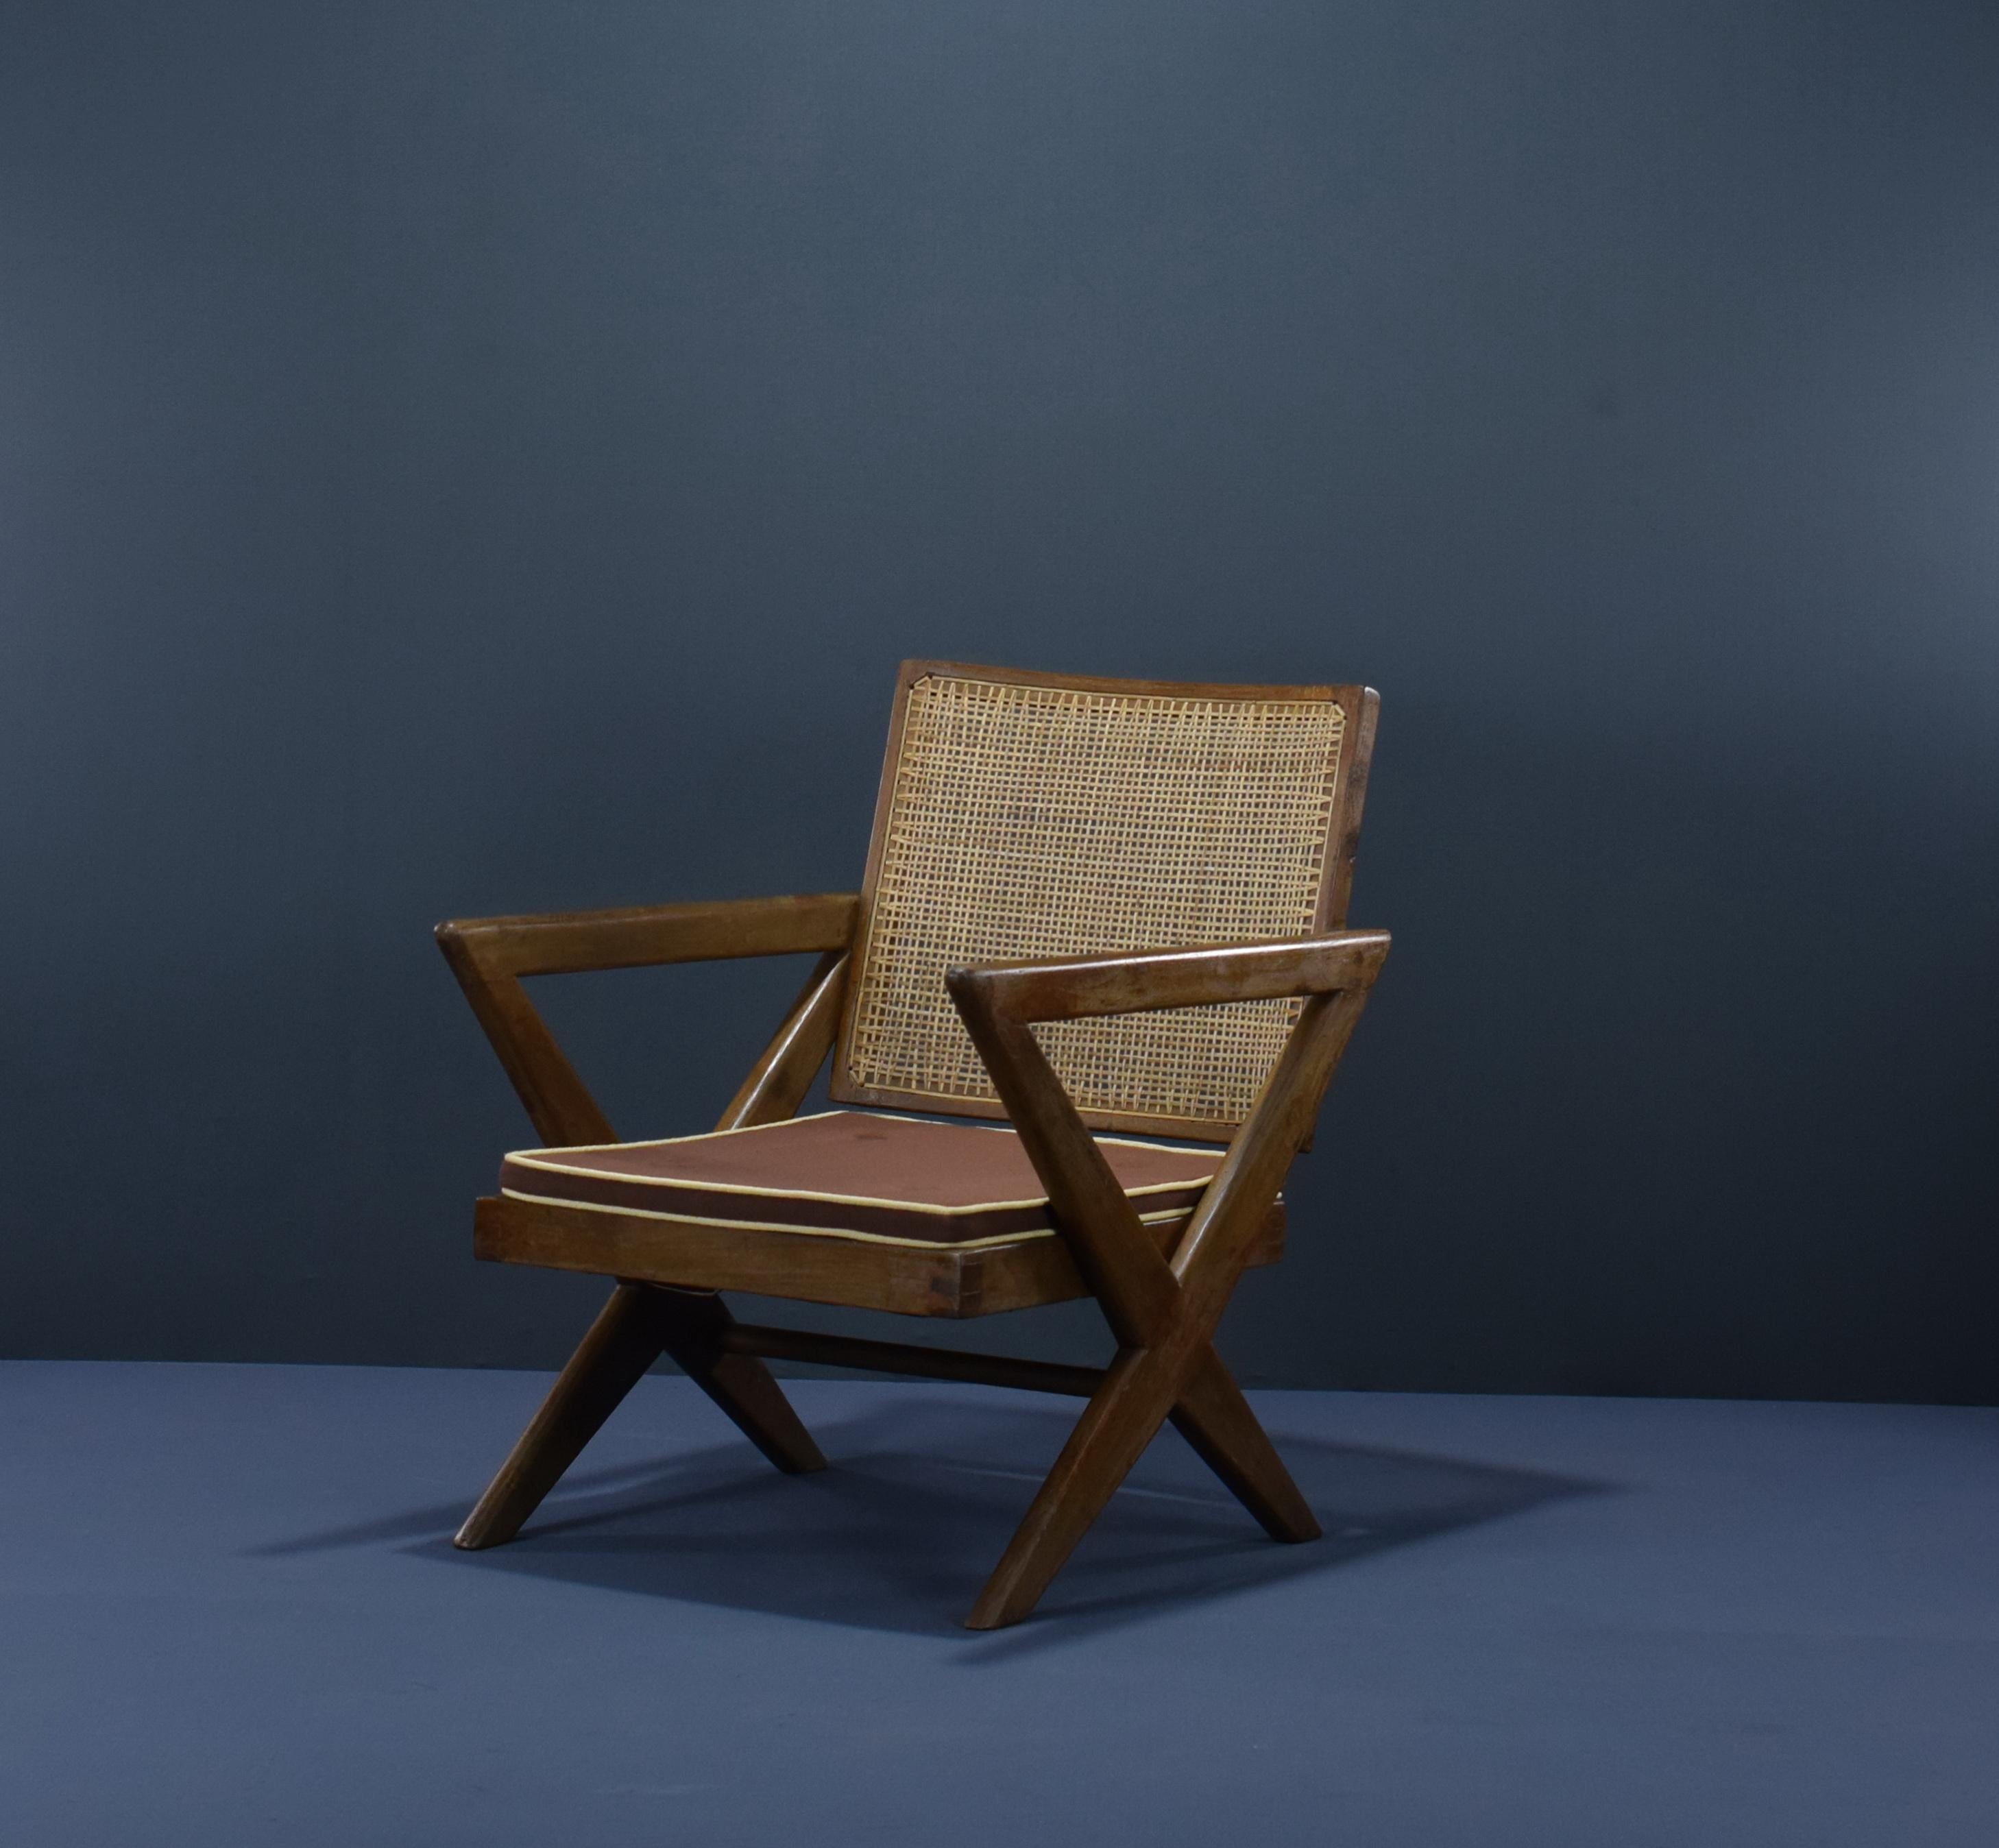 Dieses Set aus zwei X-Fuß-Stühlen ist absolut fantastisch. Die X-förmigen Beine sind charakteristisch für Pierre Jeannerets Design für Chandigarh und auf vielen Objekten zu sehen. Es gibt einen ähnlichen Typ mit A-Beinen, aber dieser ist definitiv